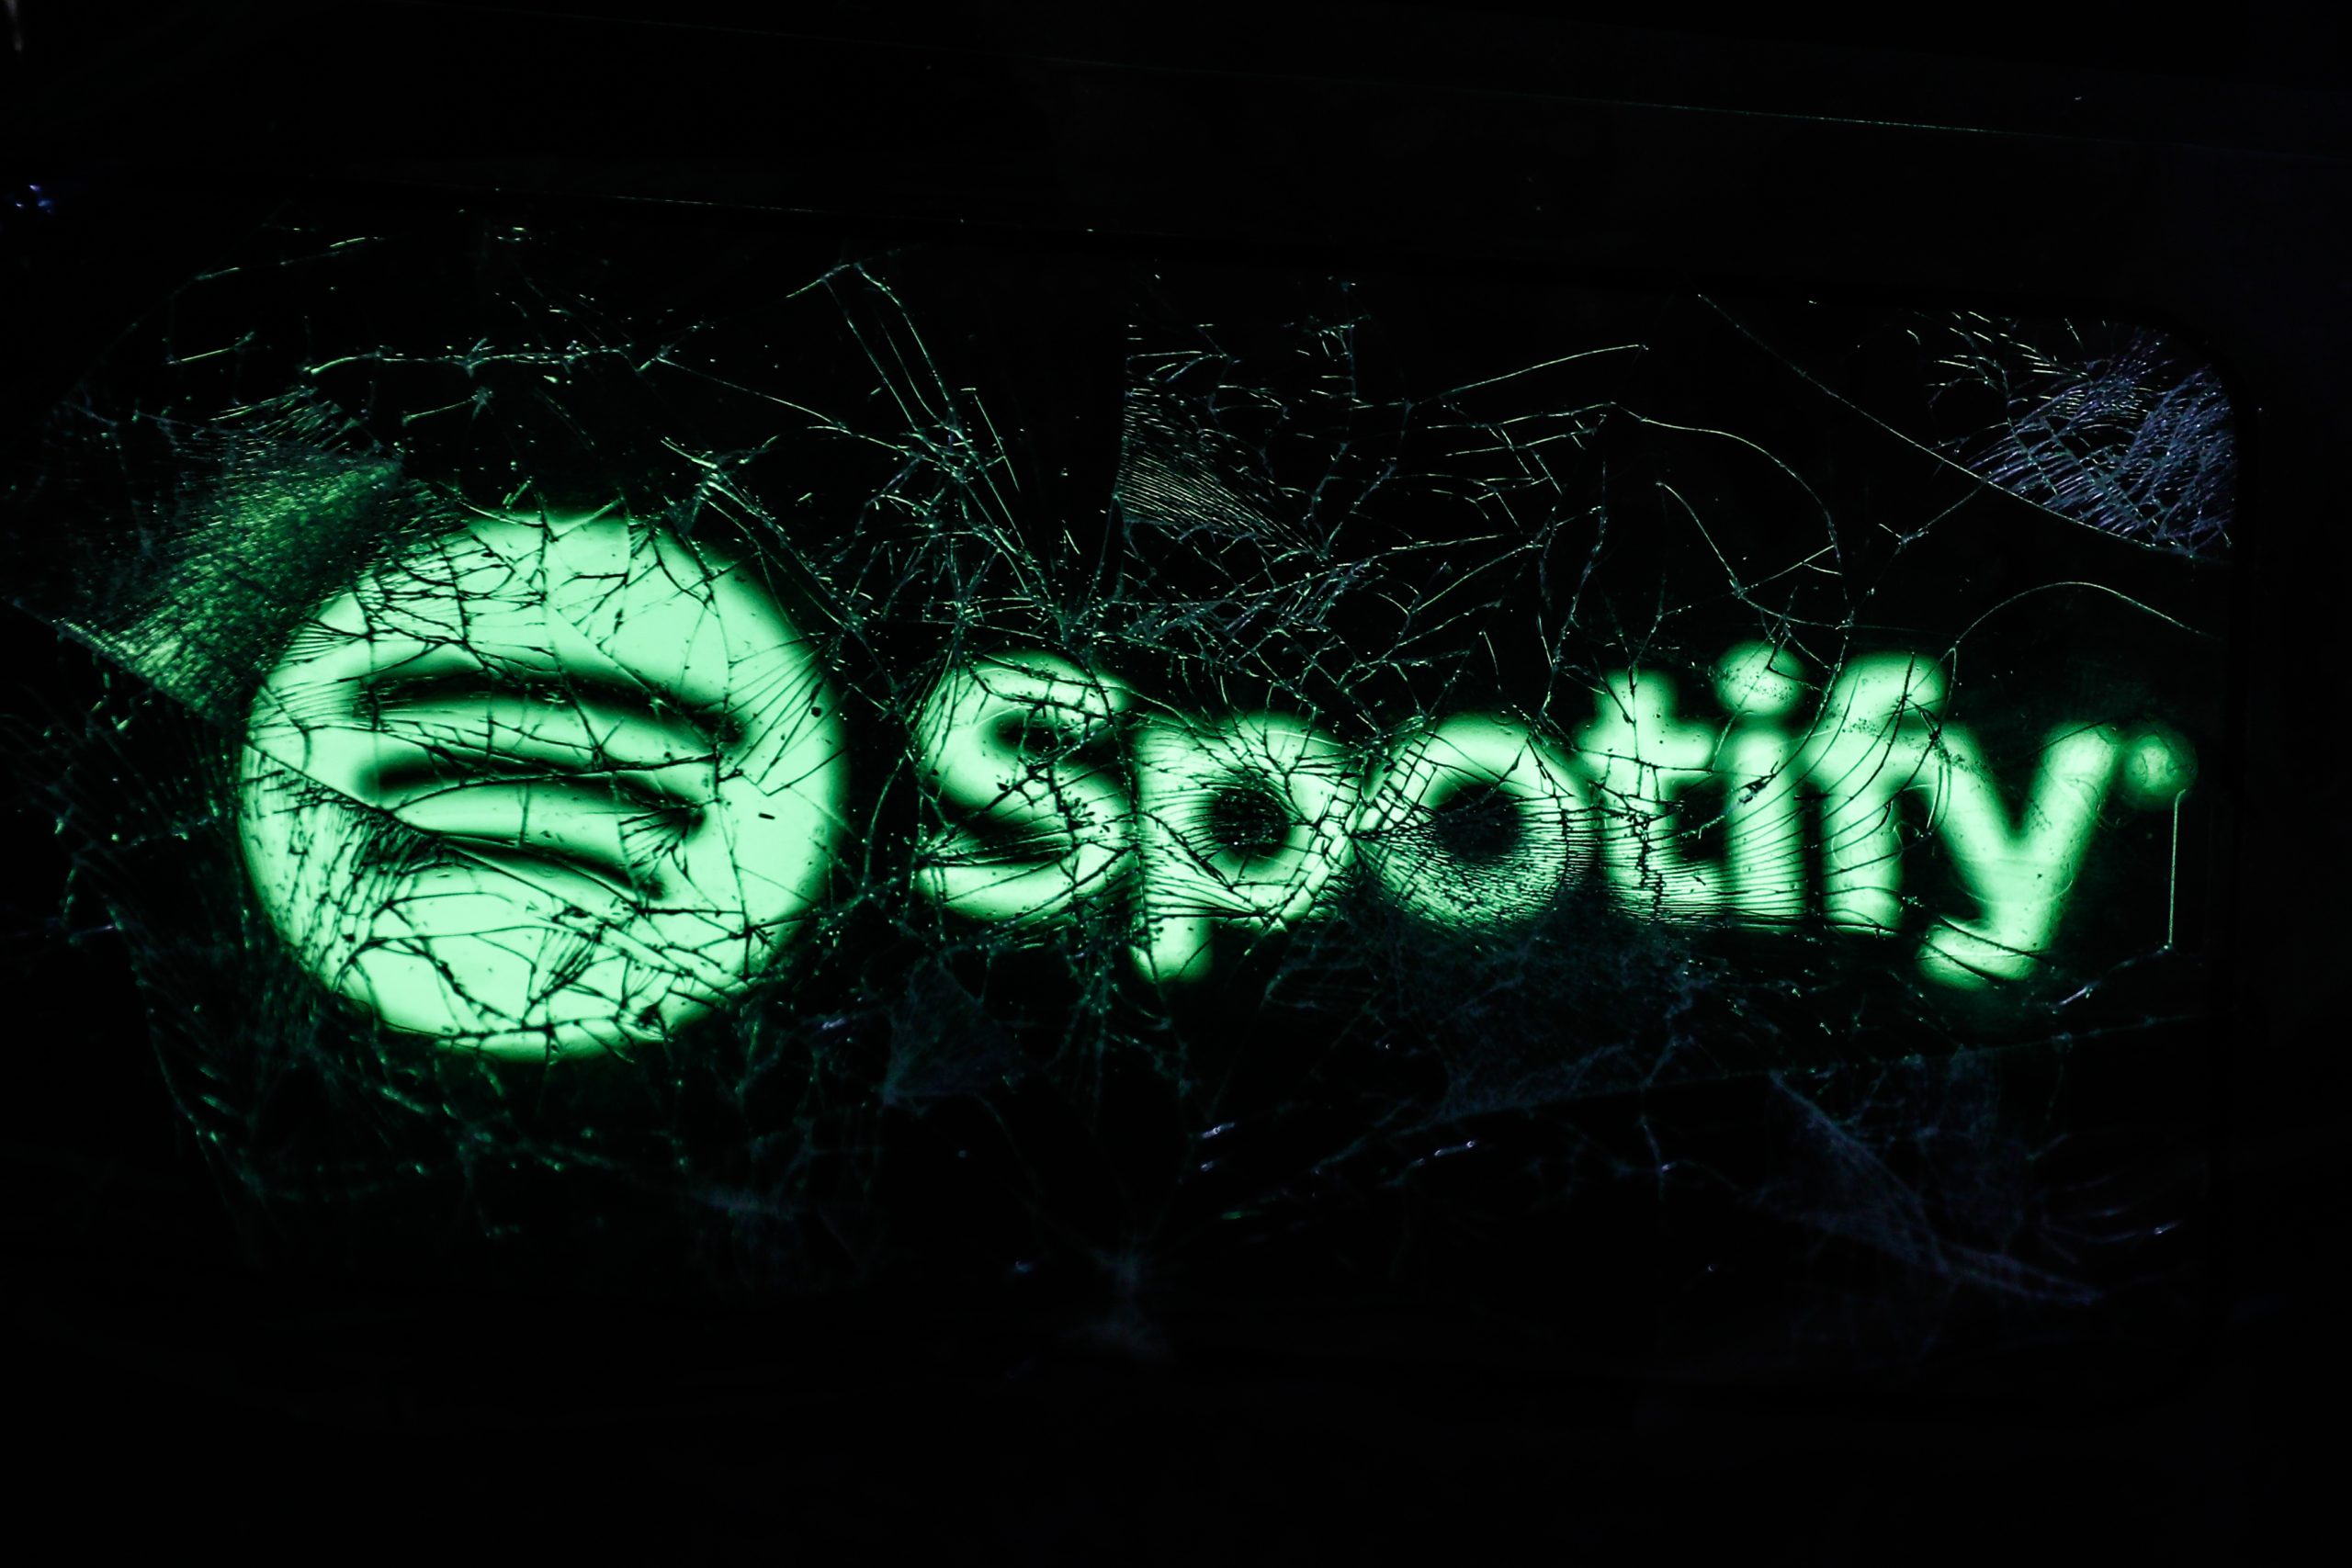 Dịch vụ lưu trữ podcast của Spotify đã ngừng hoạt động do chứng chỉ bảo mật đã hết hiệu lực